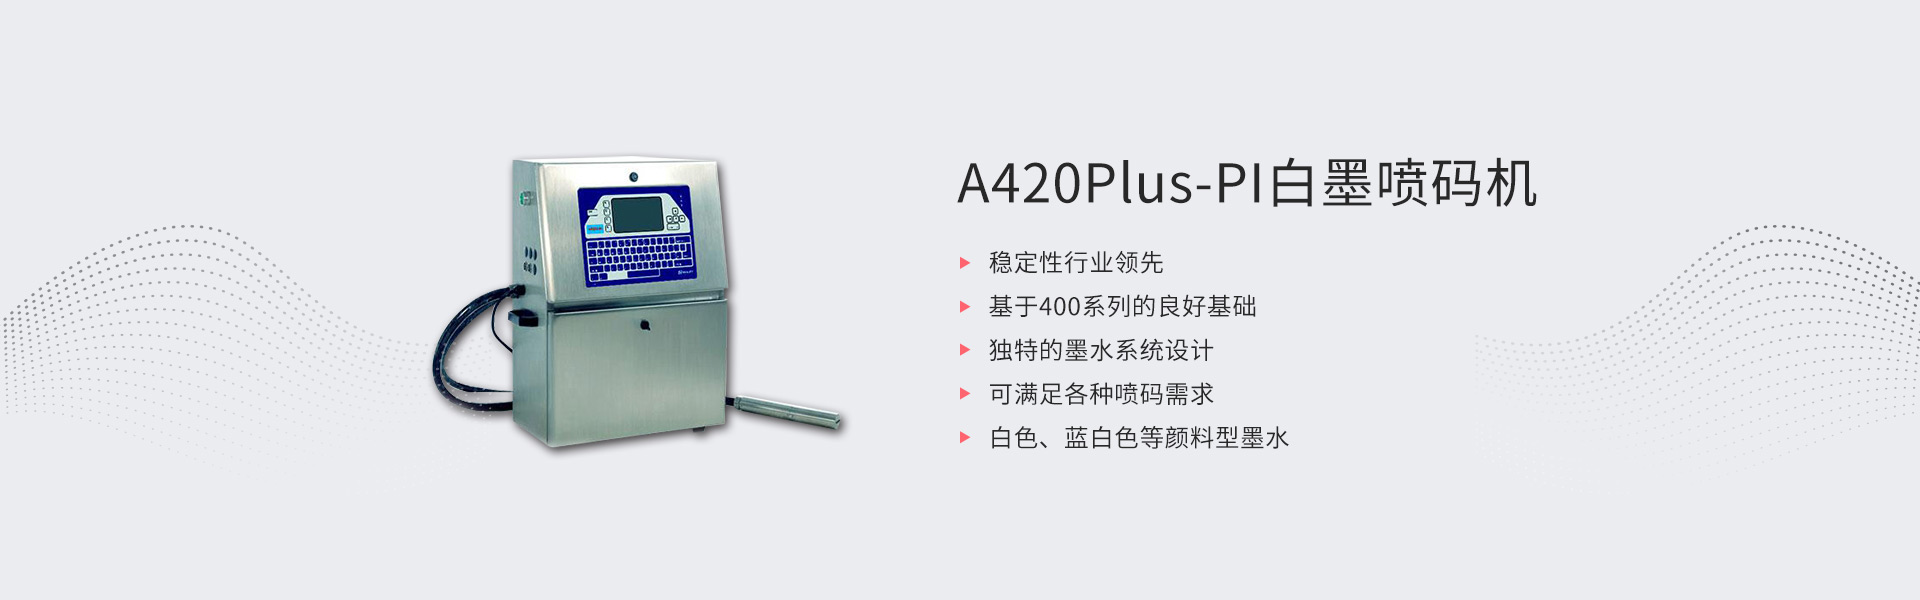 A420Plus-PI白墨喷码机(图1)